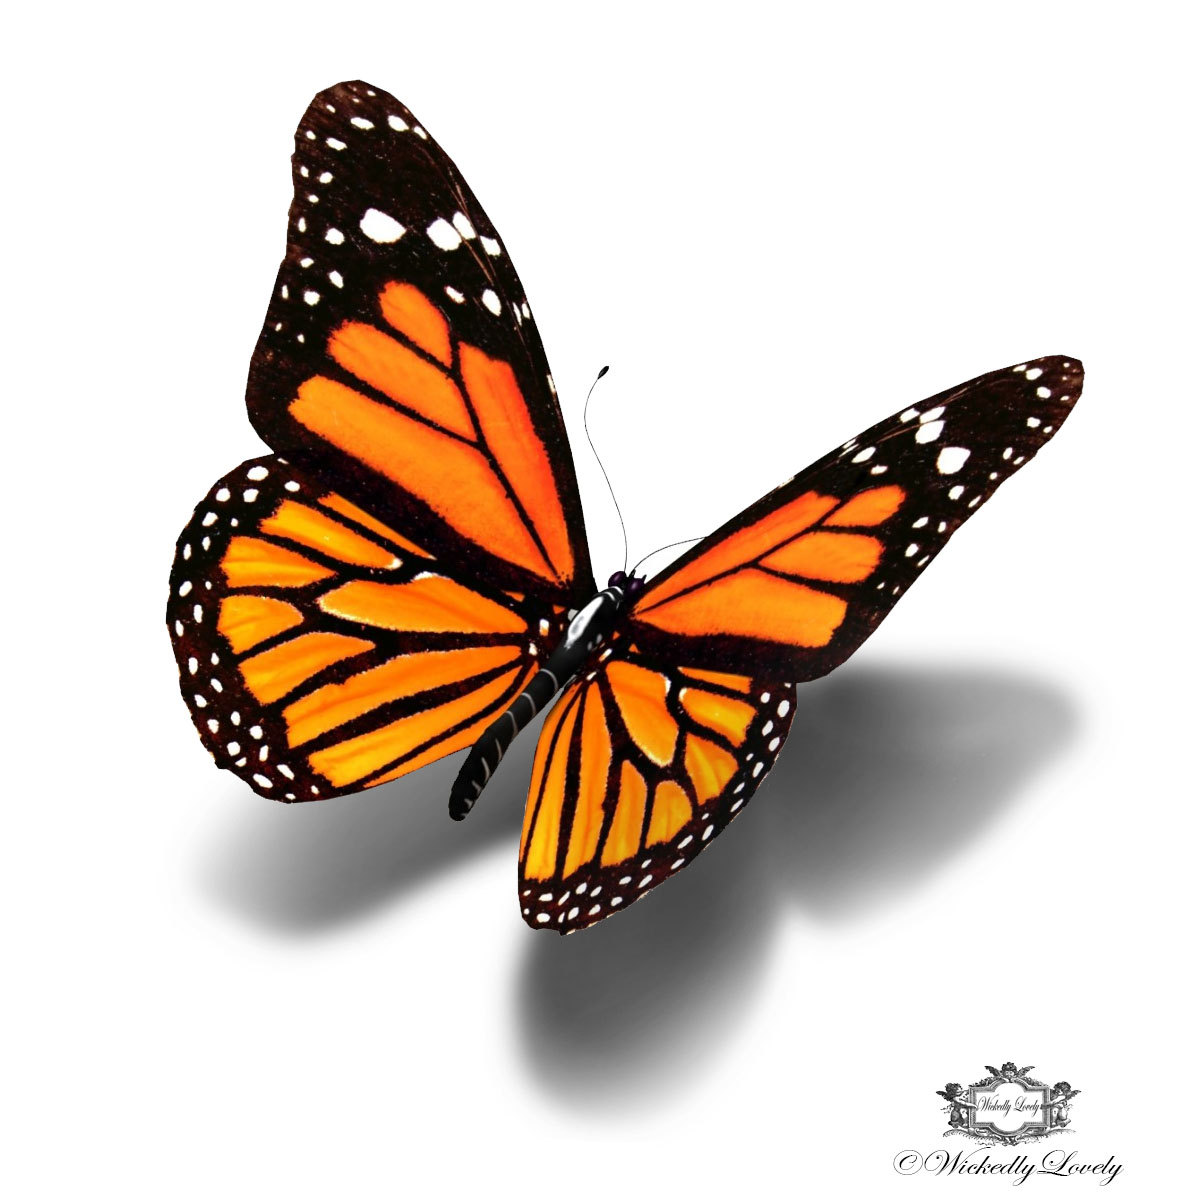 found-on-bing-from-www-pinterest-co-uk-black-butterfly-butterfly